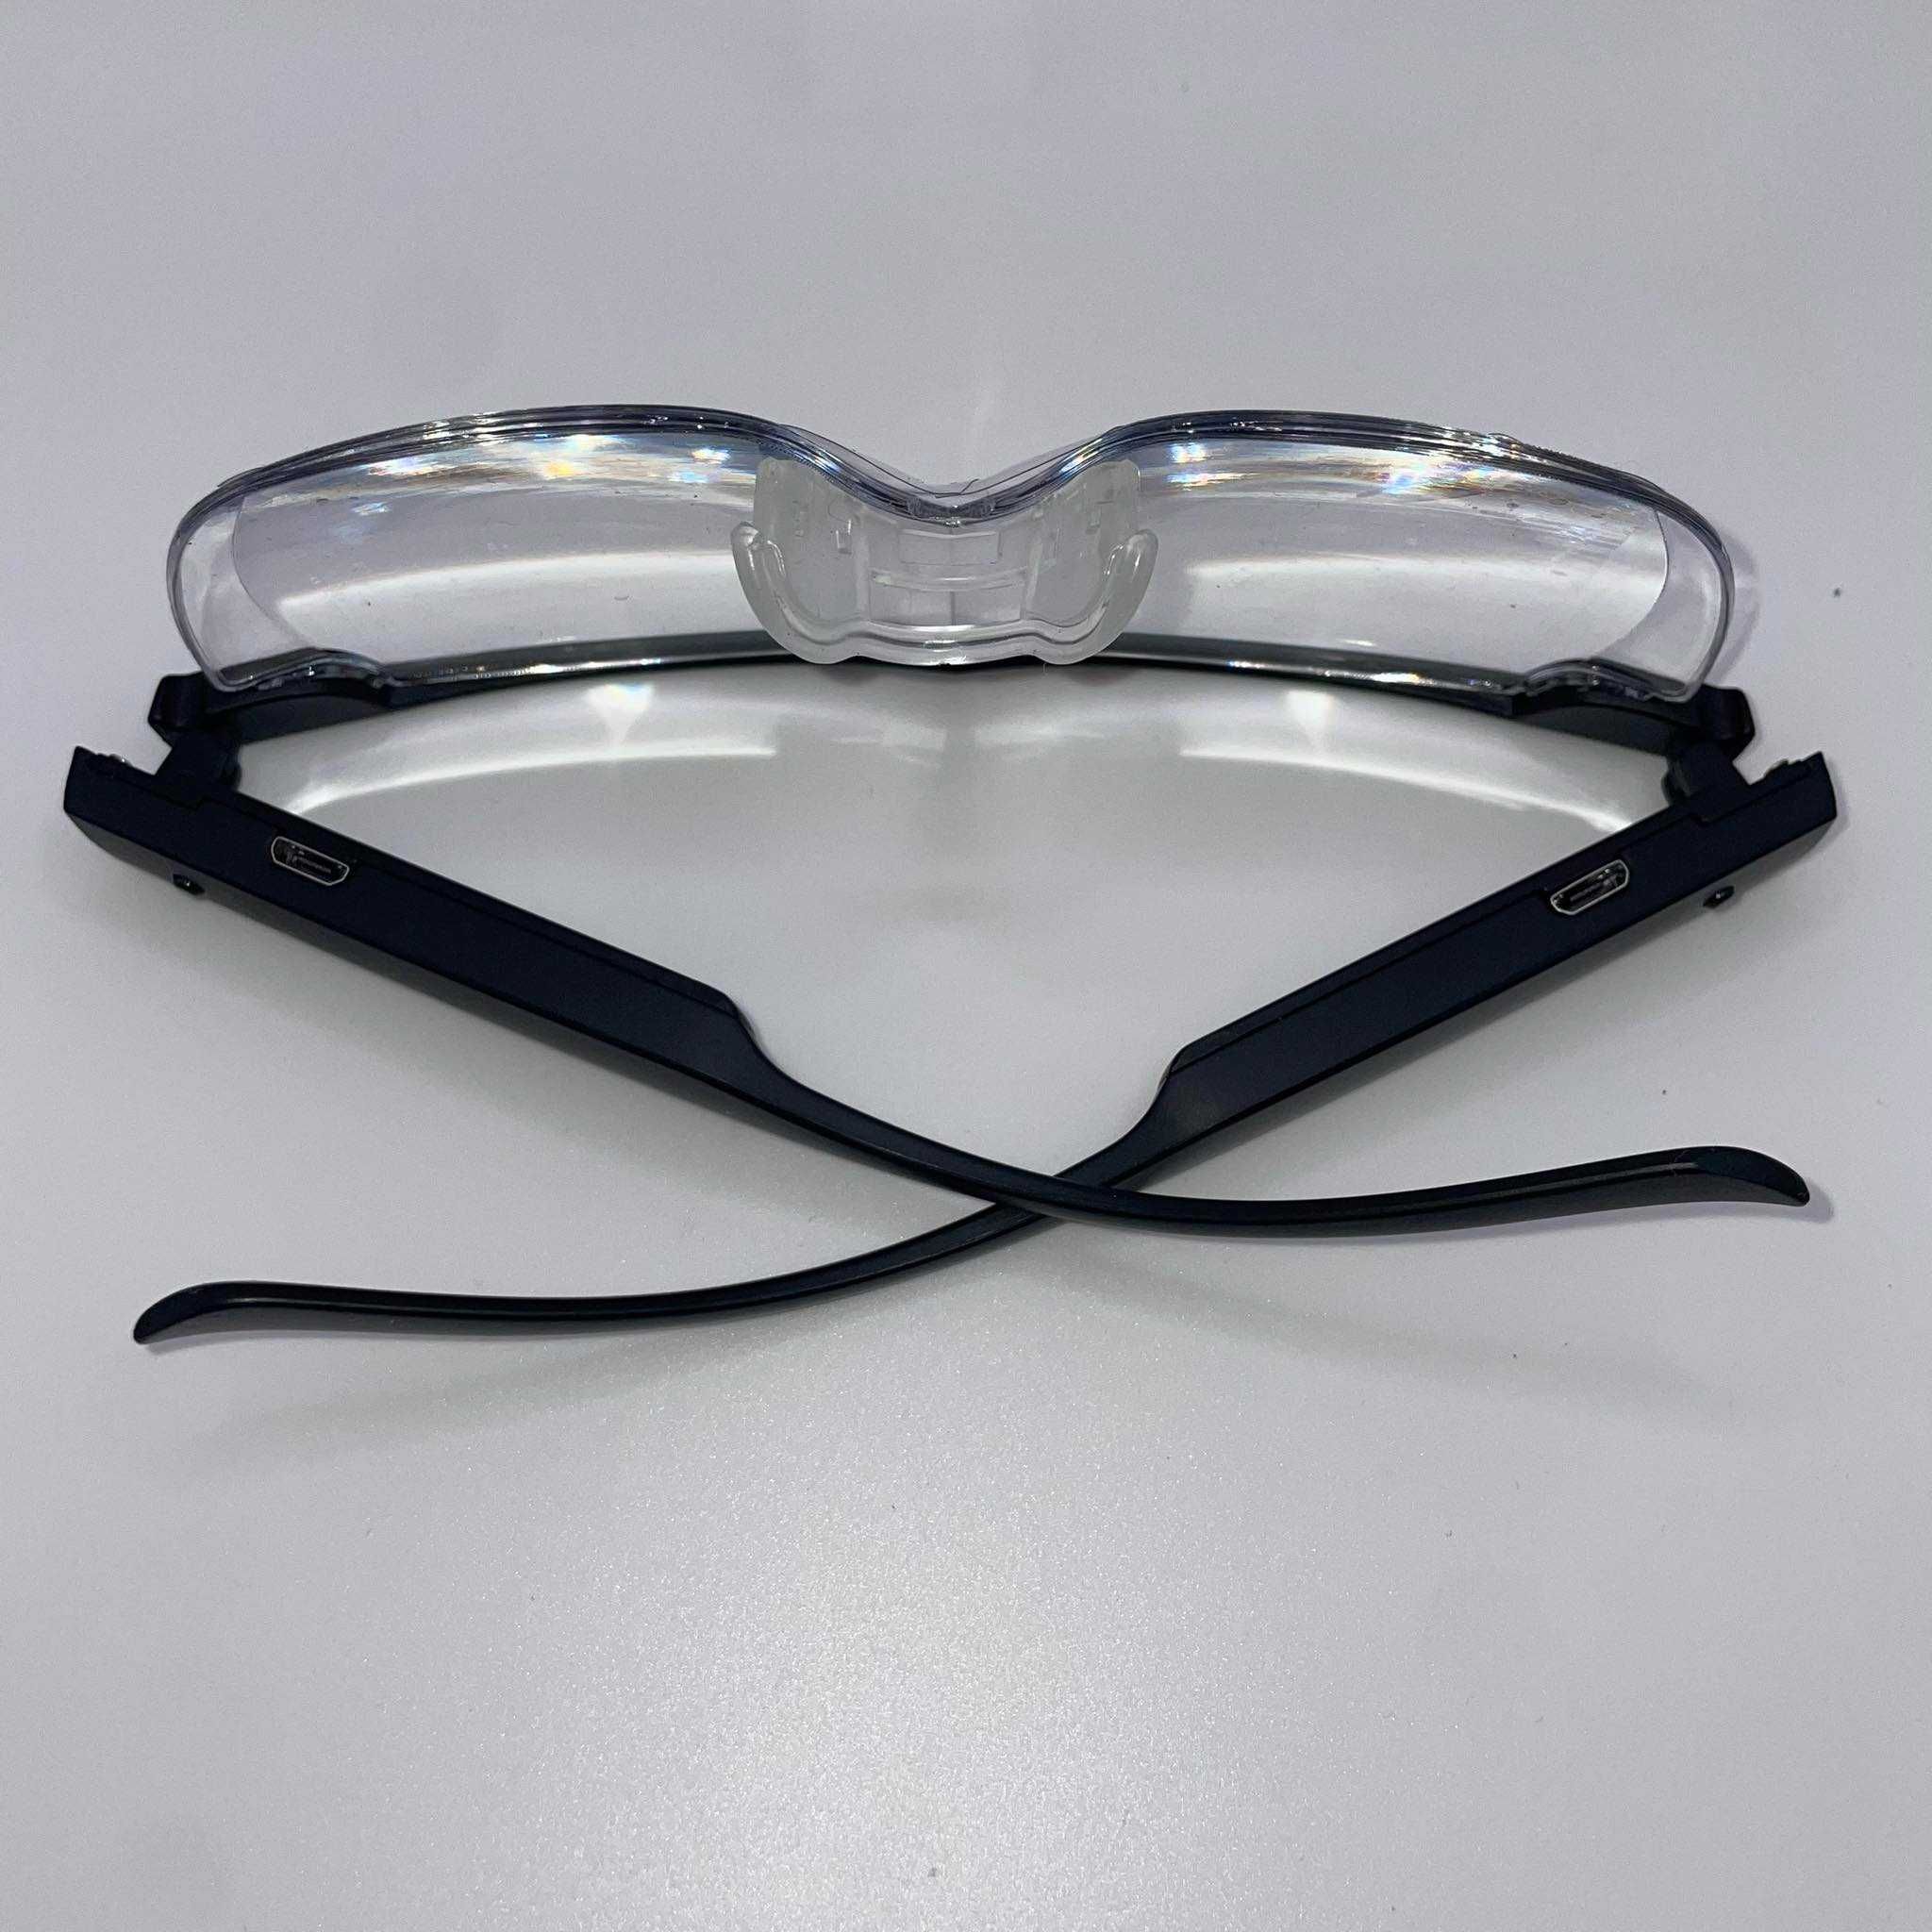 Okulary do czytania BIGFOX, okulary powiększające, 2 diody LED